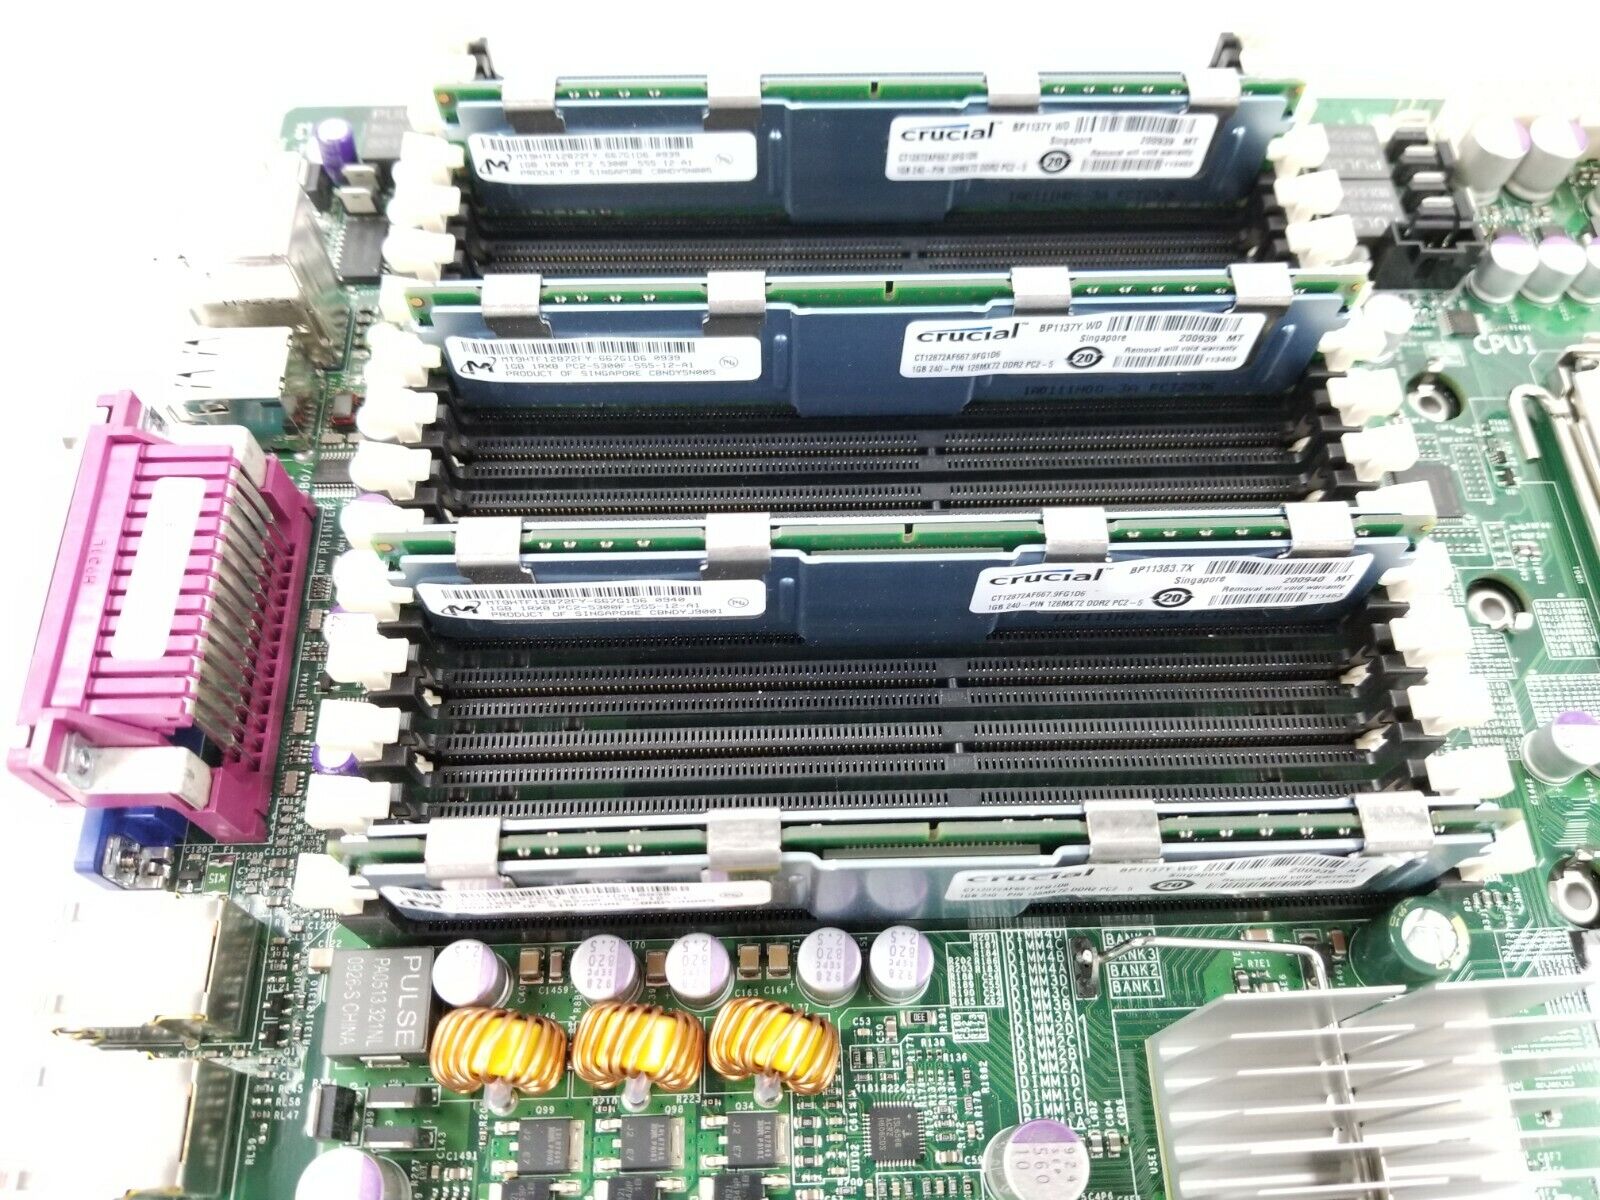 Supermicro X7DBE+ Motherboard 2x Intel Xeon 5140 2.33GHz 4GB RAM I/O Shield